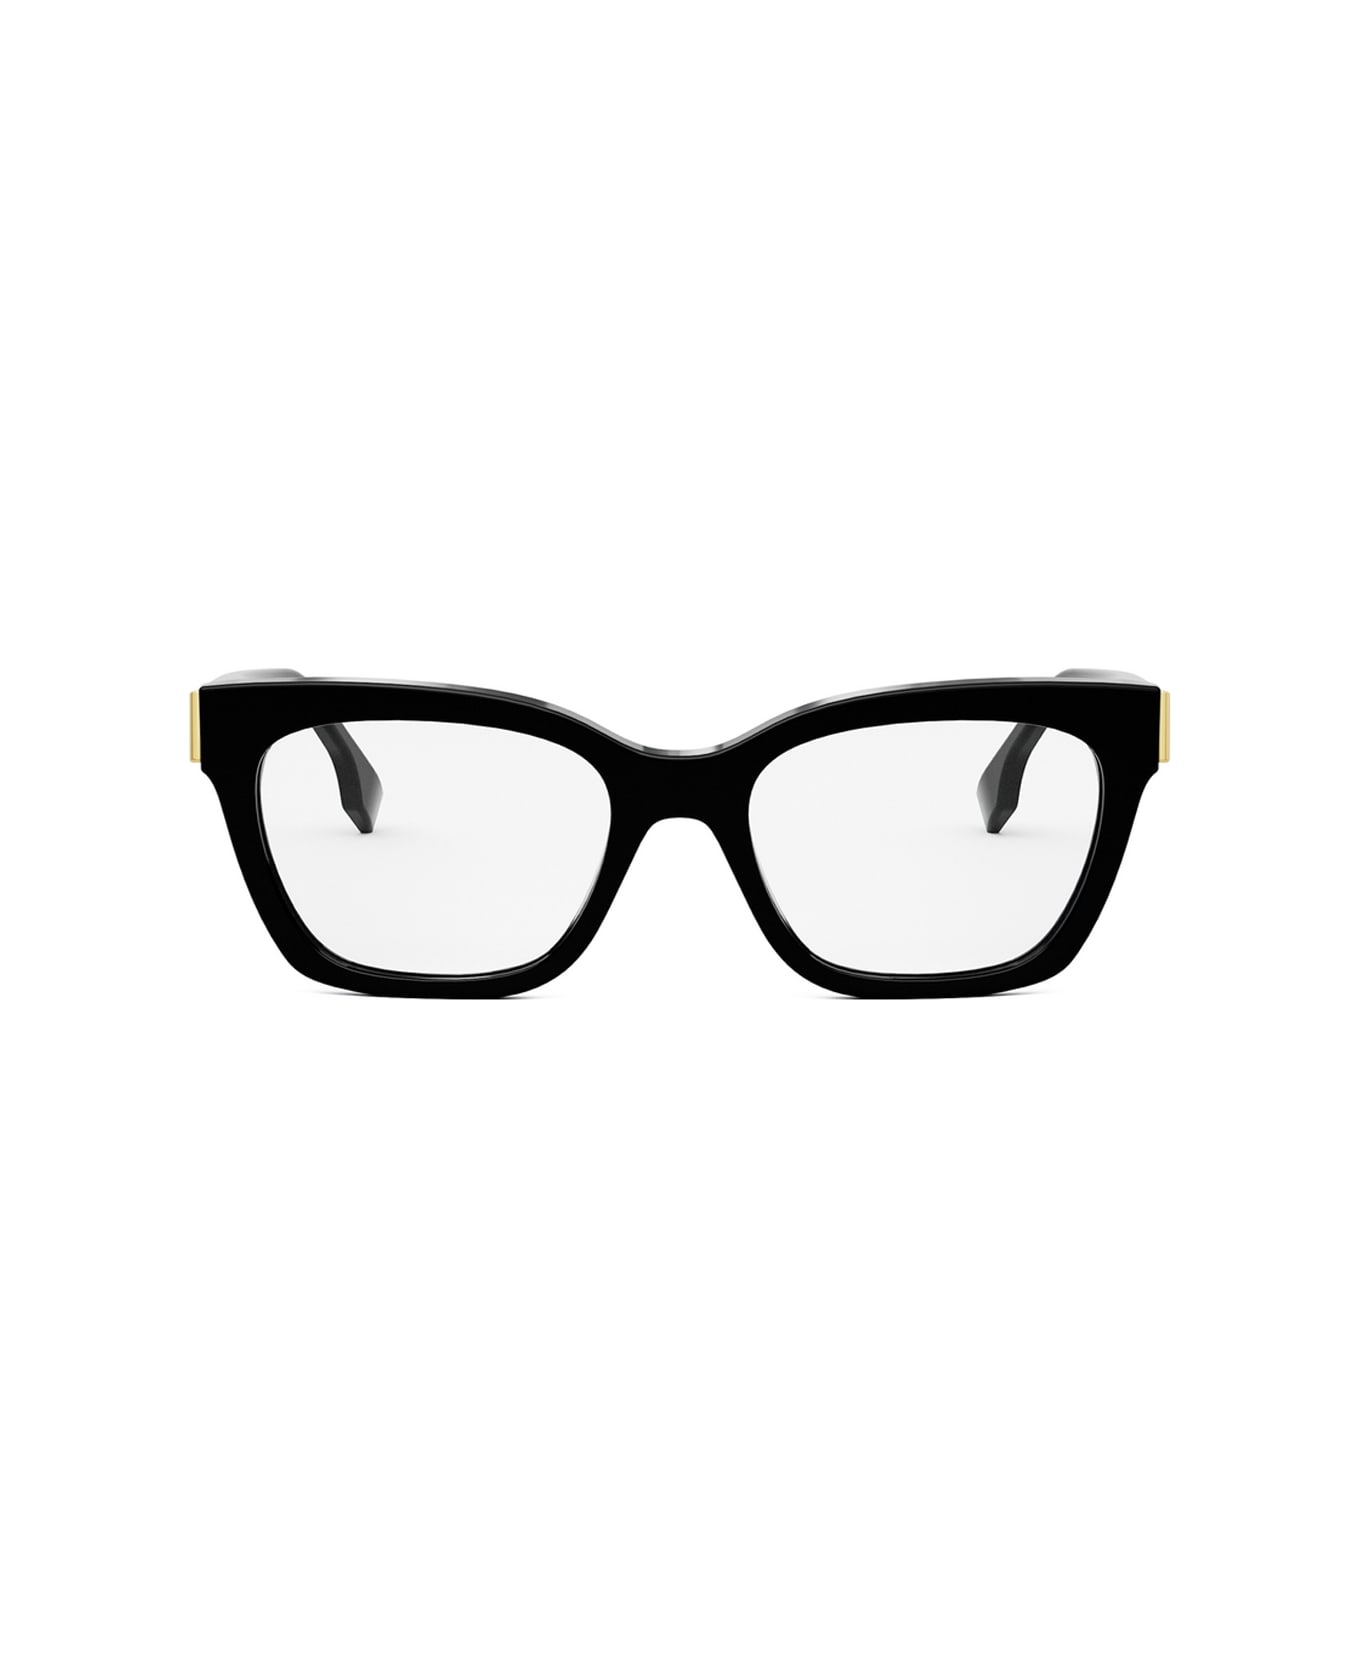 Fendi Eyewear Fe50073i 001 Glasses - Nero アイウェア